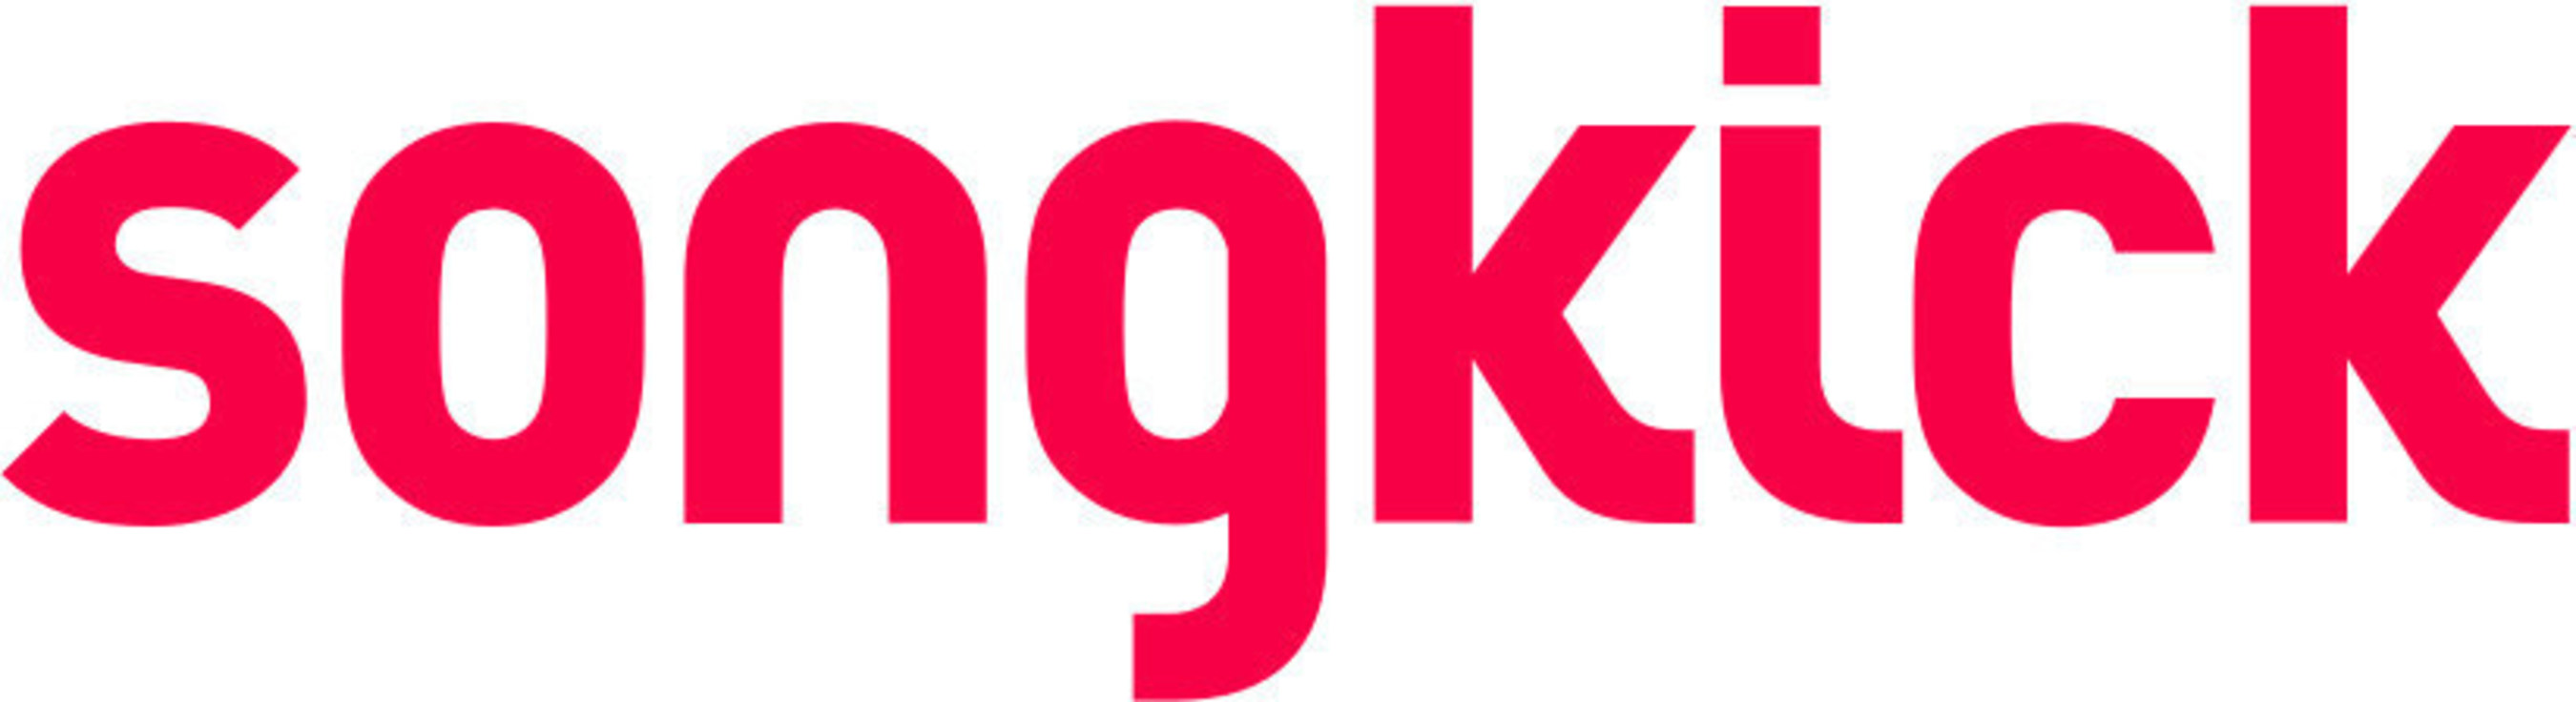 Songkick_Logo